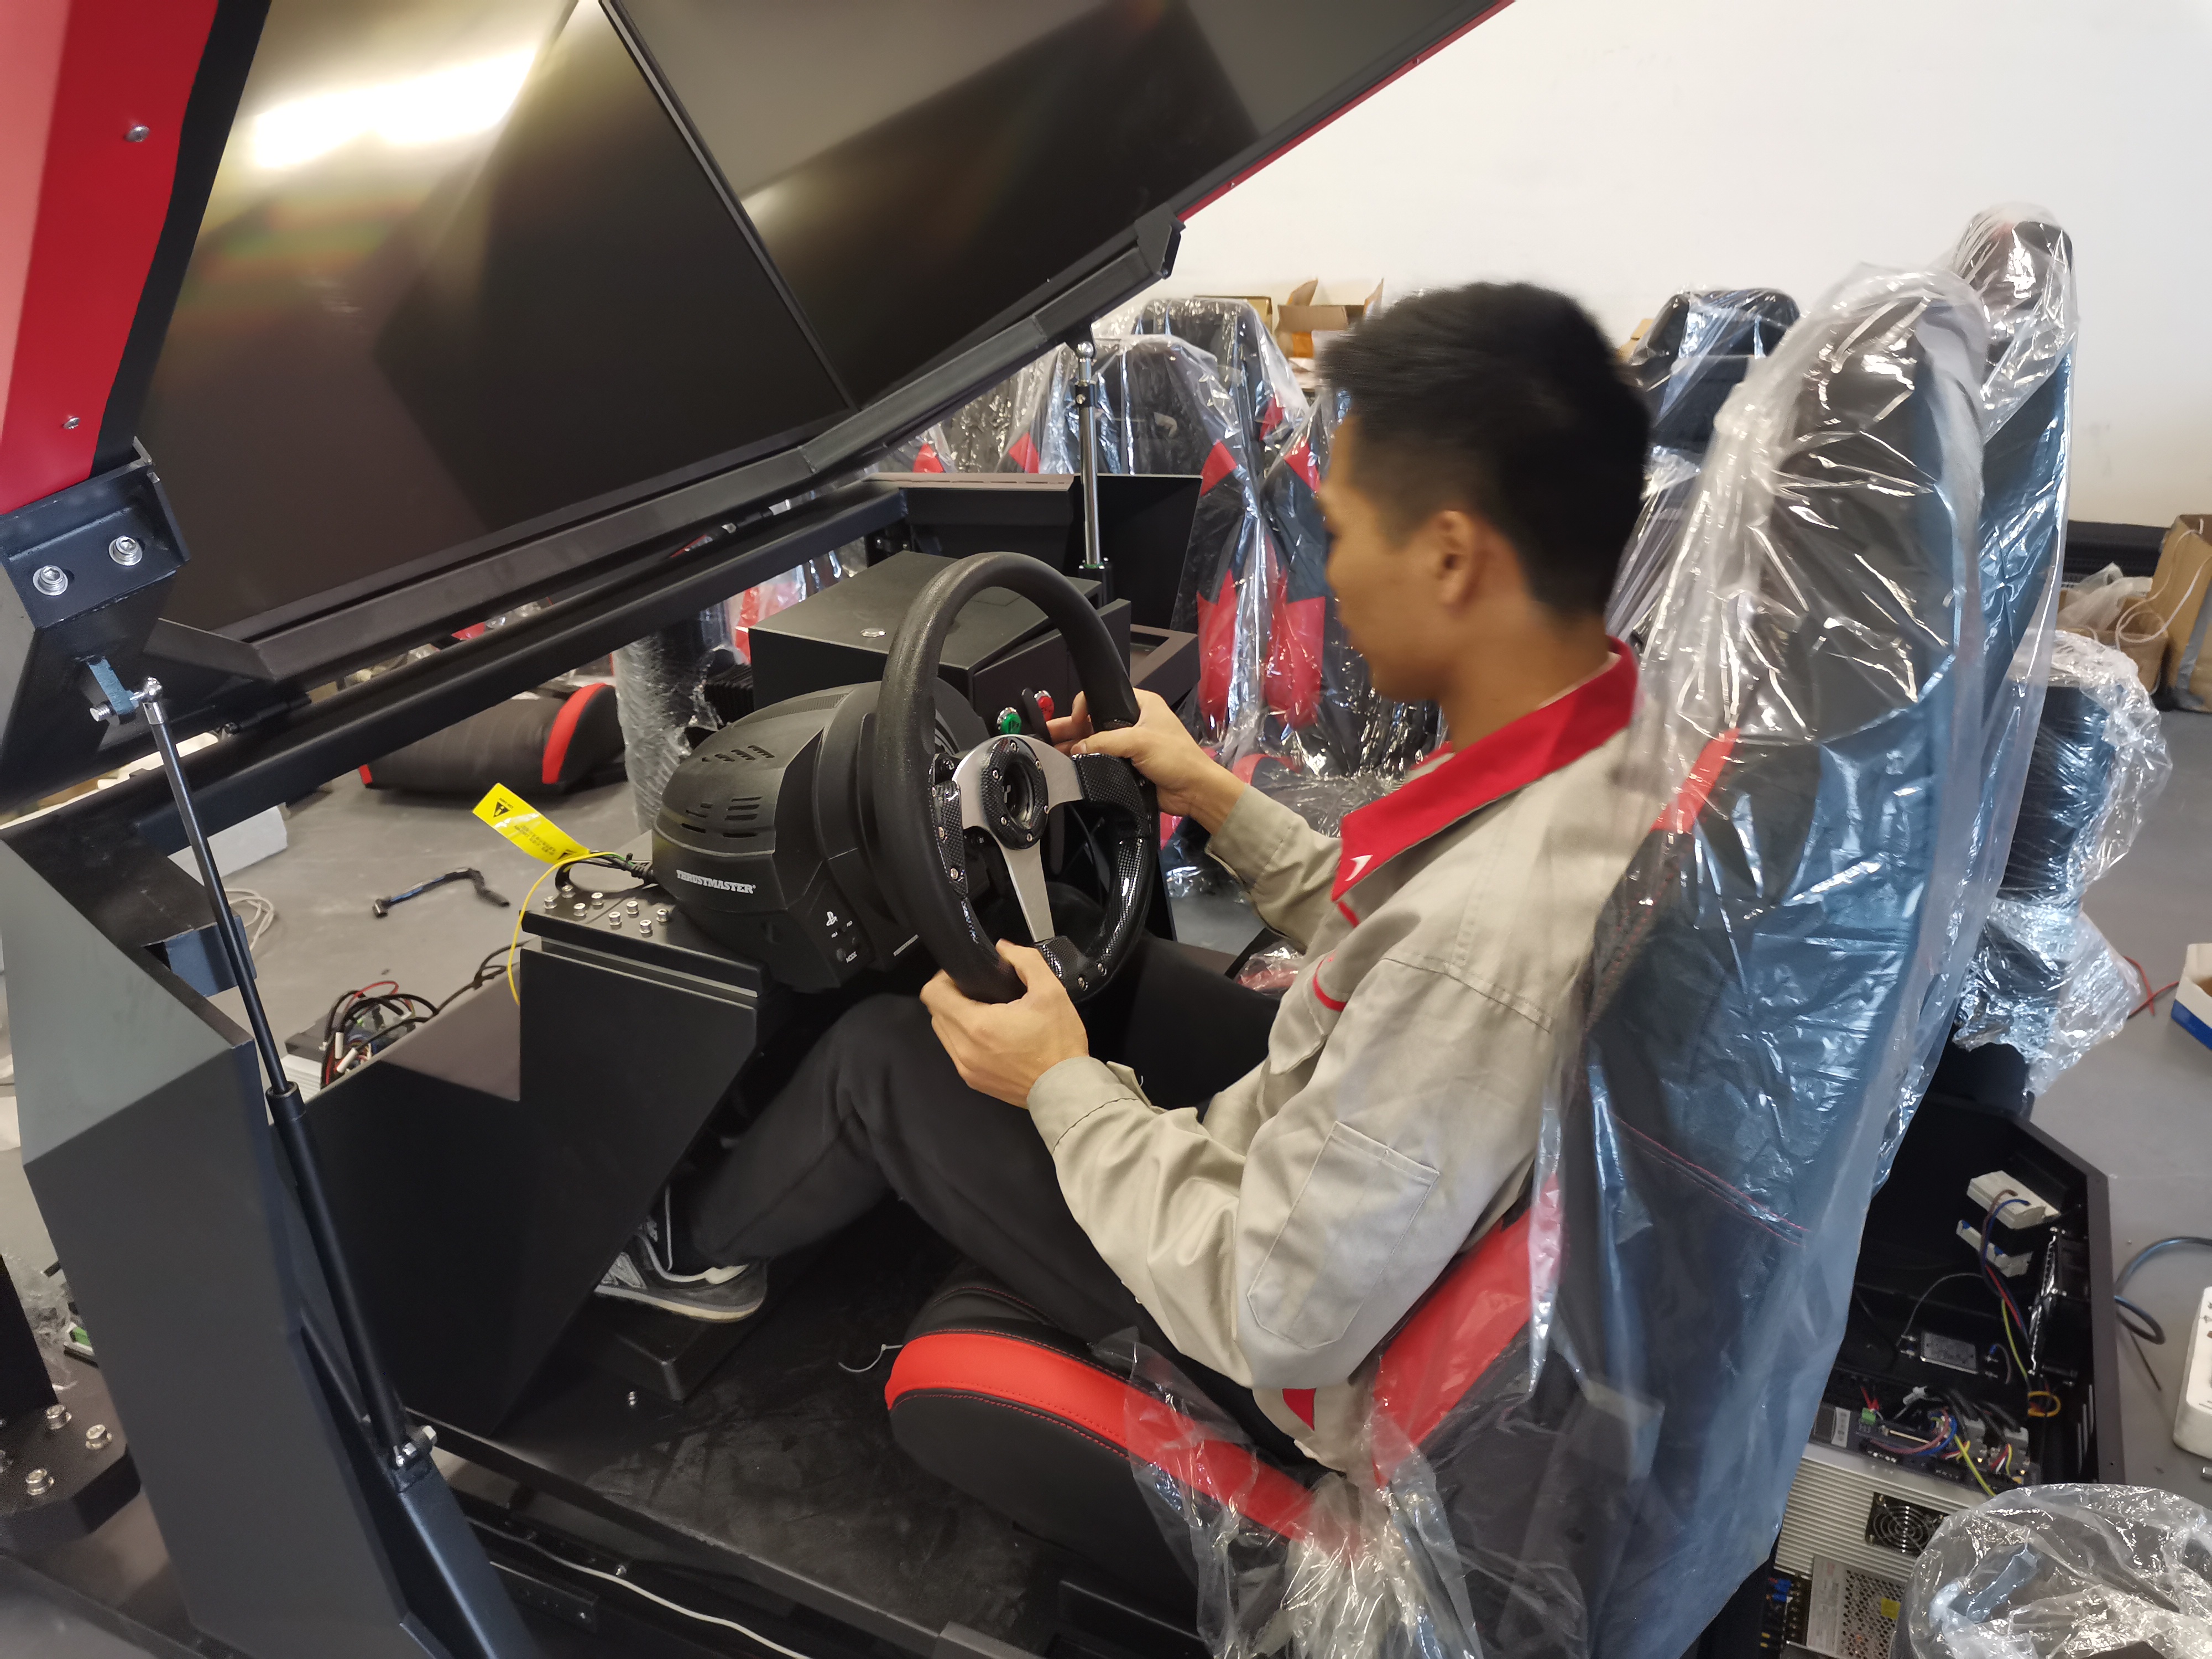 Moneda interior / VR operado en efectivo que conduce el equipo emocionante del simulador de las carreras de coches de la máquina del juego